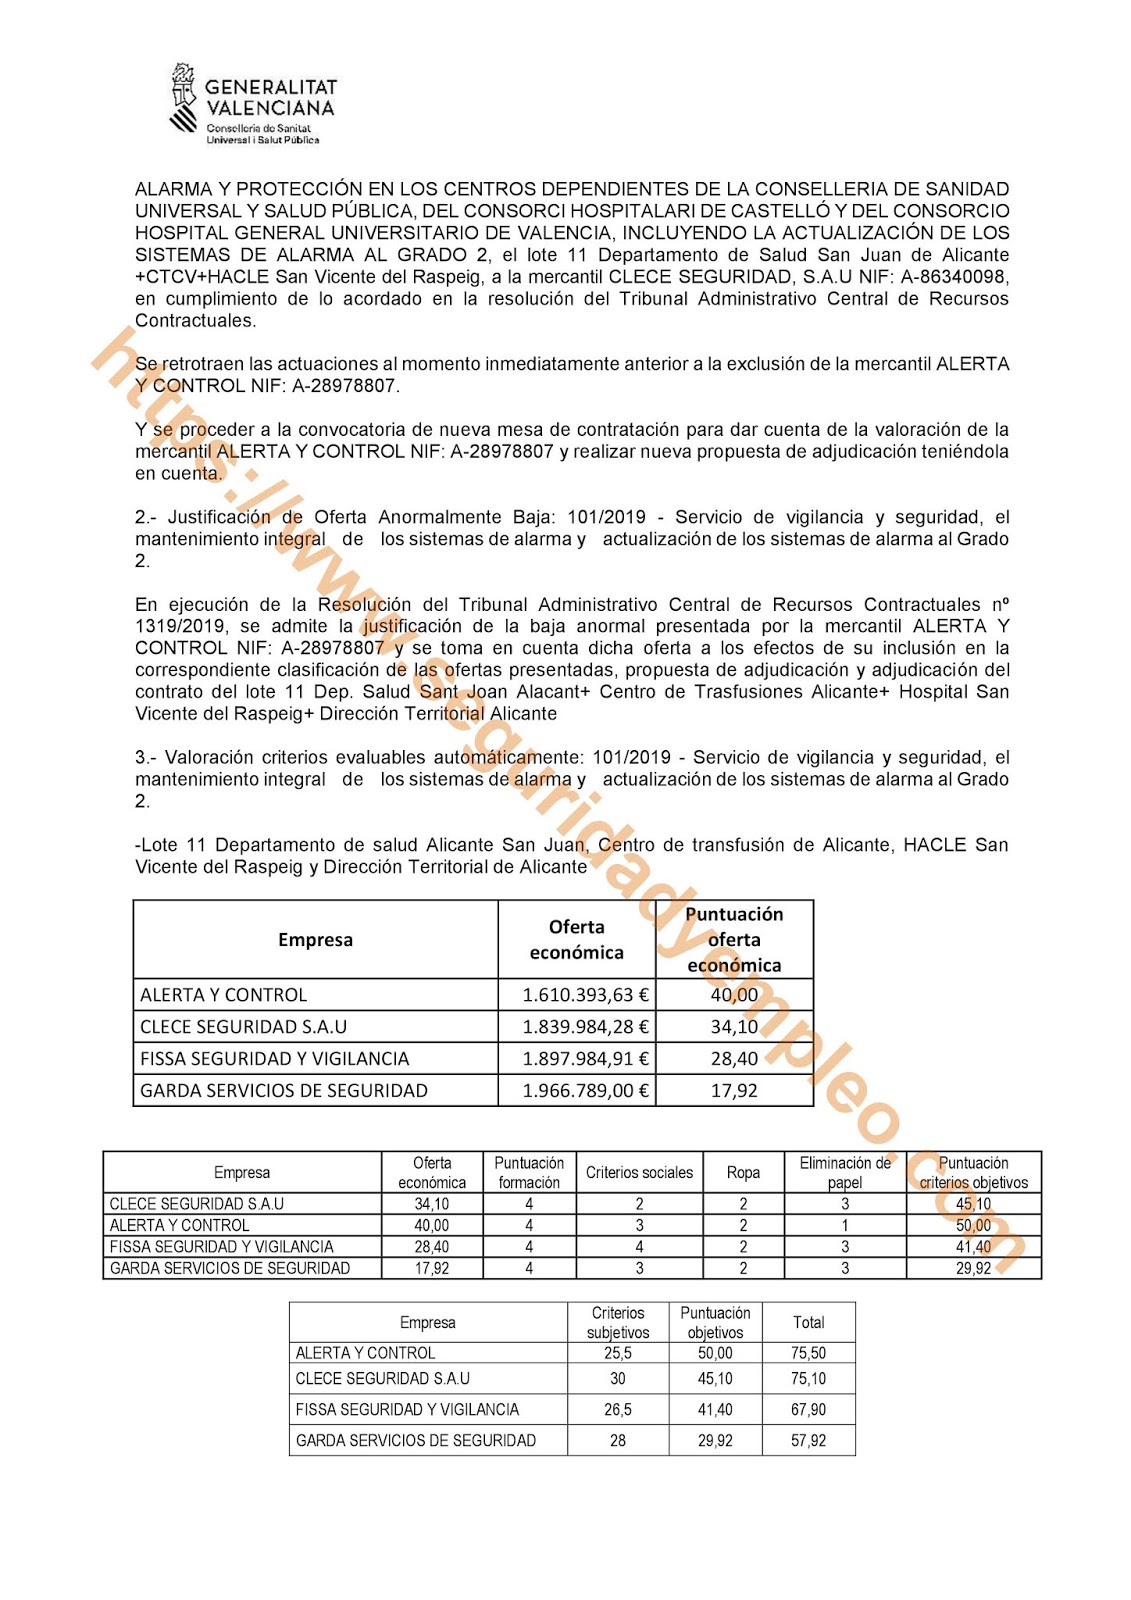 Resolución sobre la exclusión de la empresa Alerta y control en la contratación delDepartamento de salud Alicante San Juan, Centro de transfusión de Alicante, HACLE San Vicente del Raspeig y Dirección Territorial de Alicante